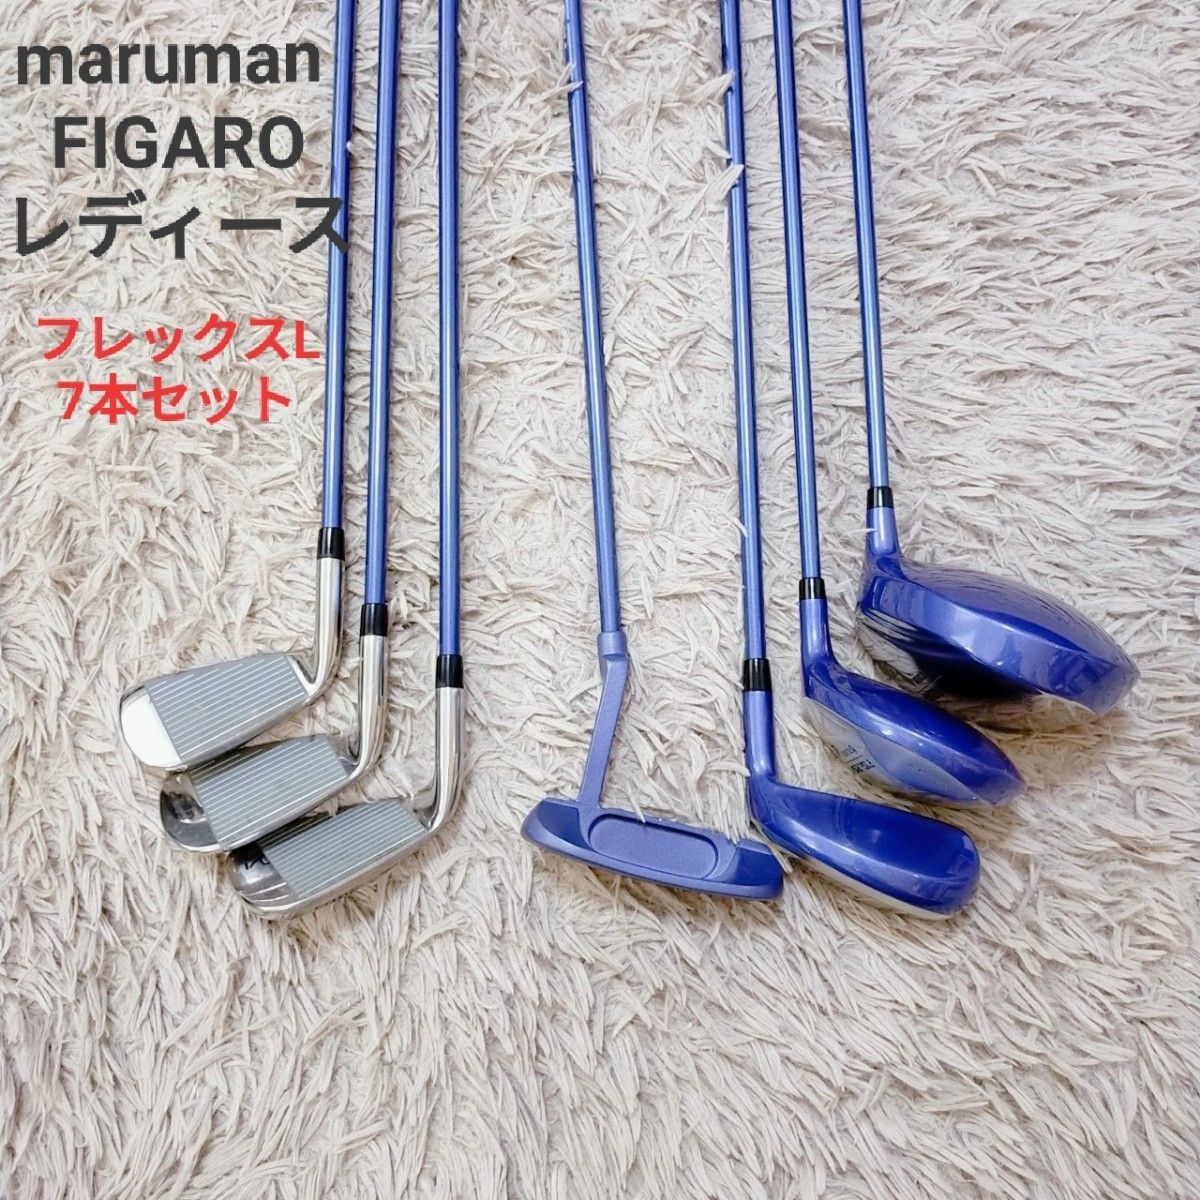 maruman FIGARO レディース 女性 ゴルフ セット